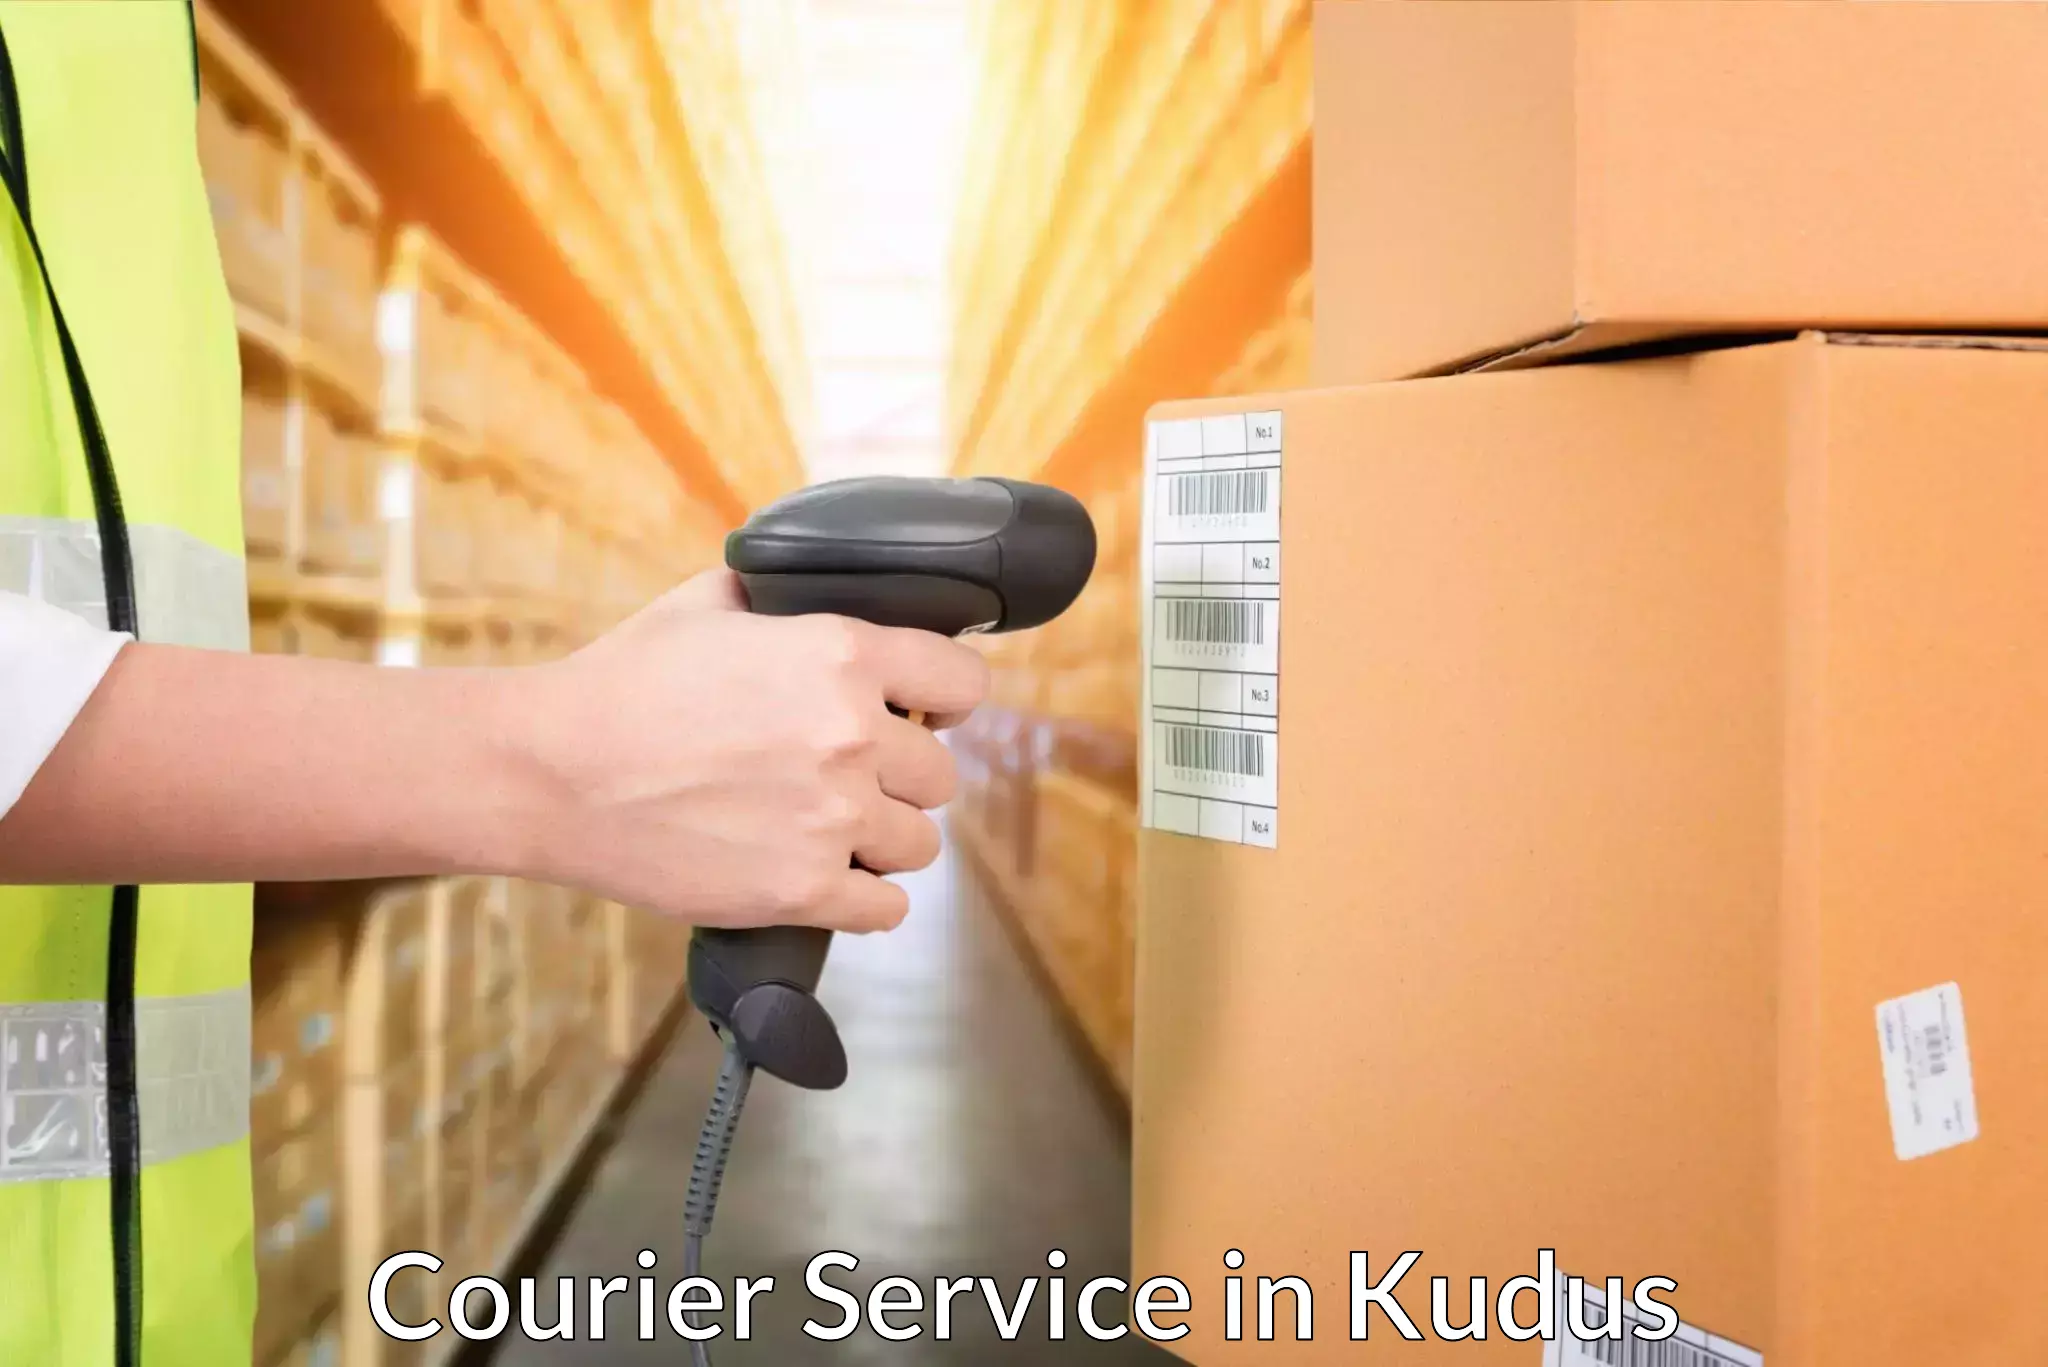 Logistics management in Kudus